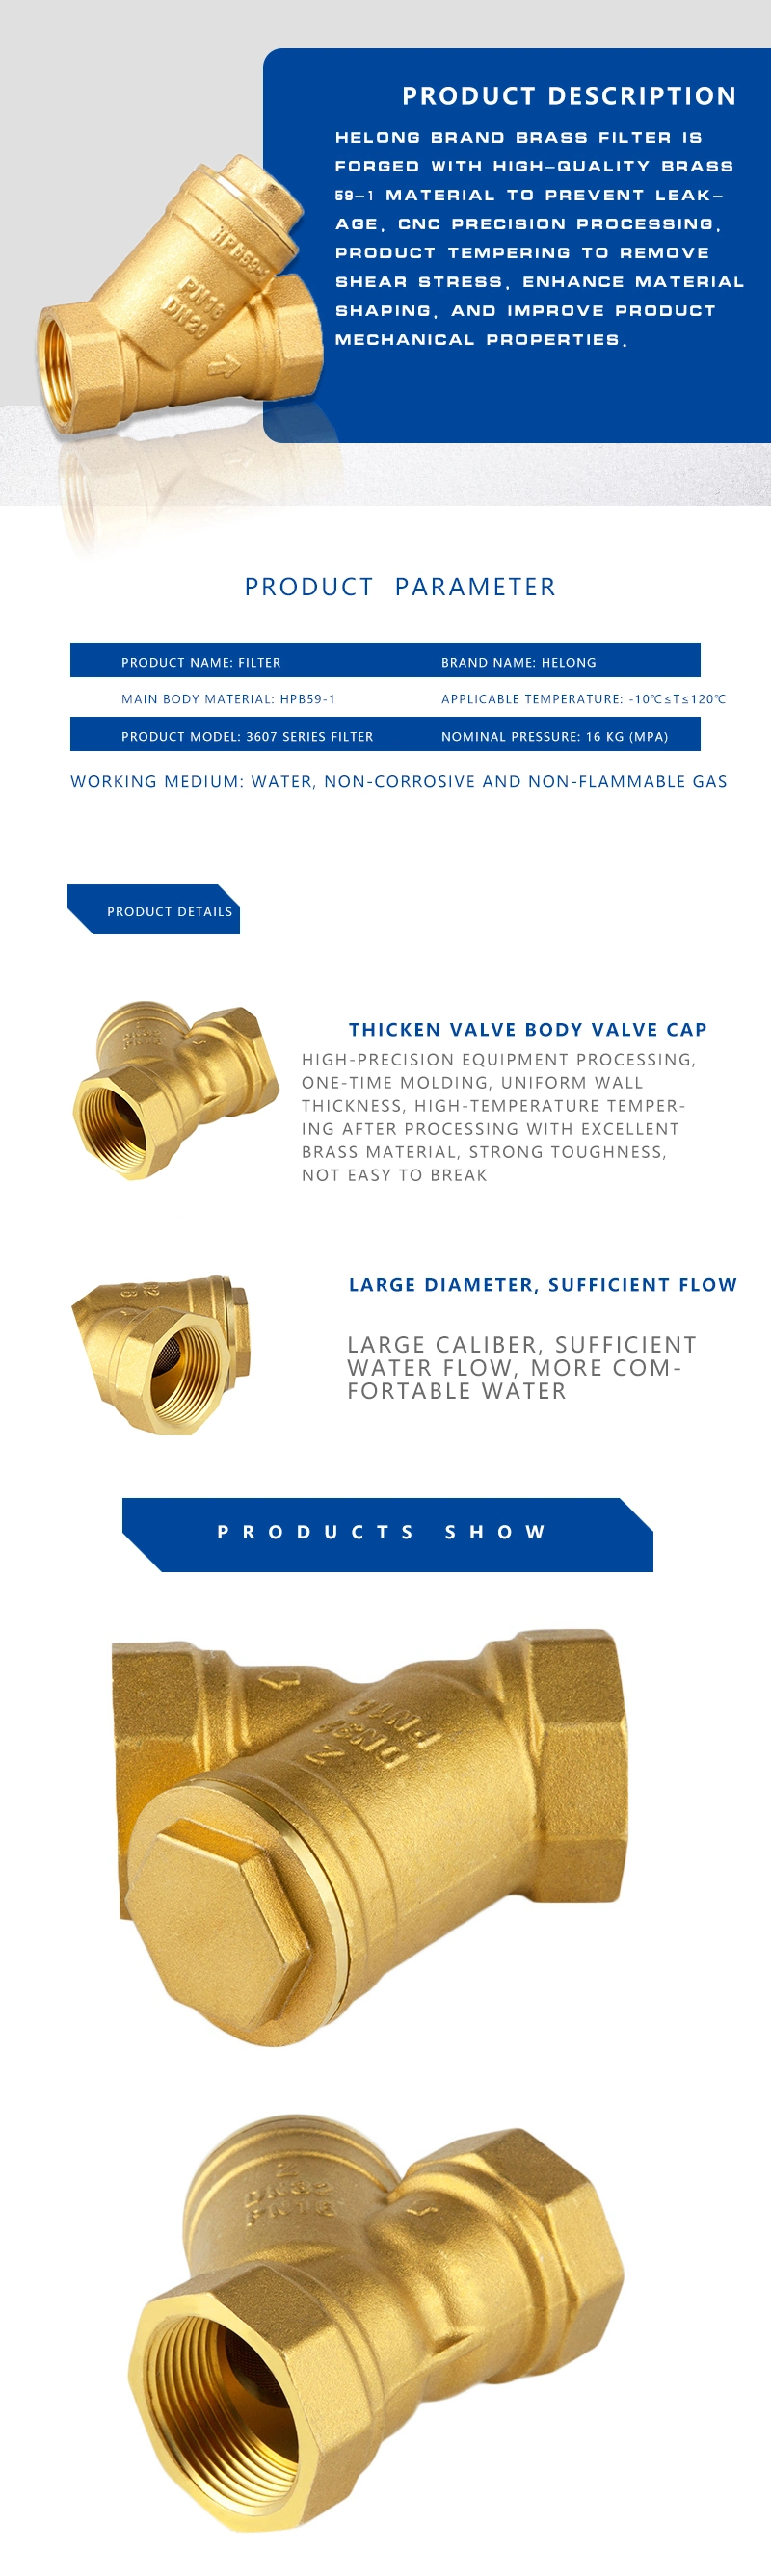 Brass Water Valve/Brass Solenoid Valve/Filter Valve/Brass Pressure Relief Valve/Brass Gas Valve/Brass Globe Valve/Brass Flush Valve/Brass 3 Way Valve